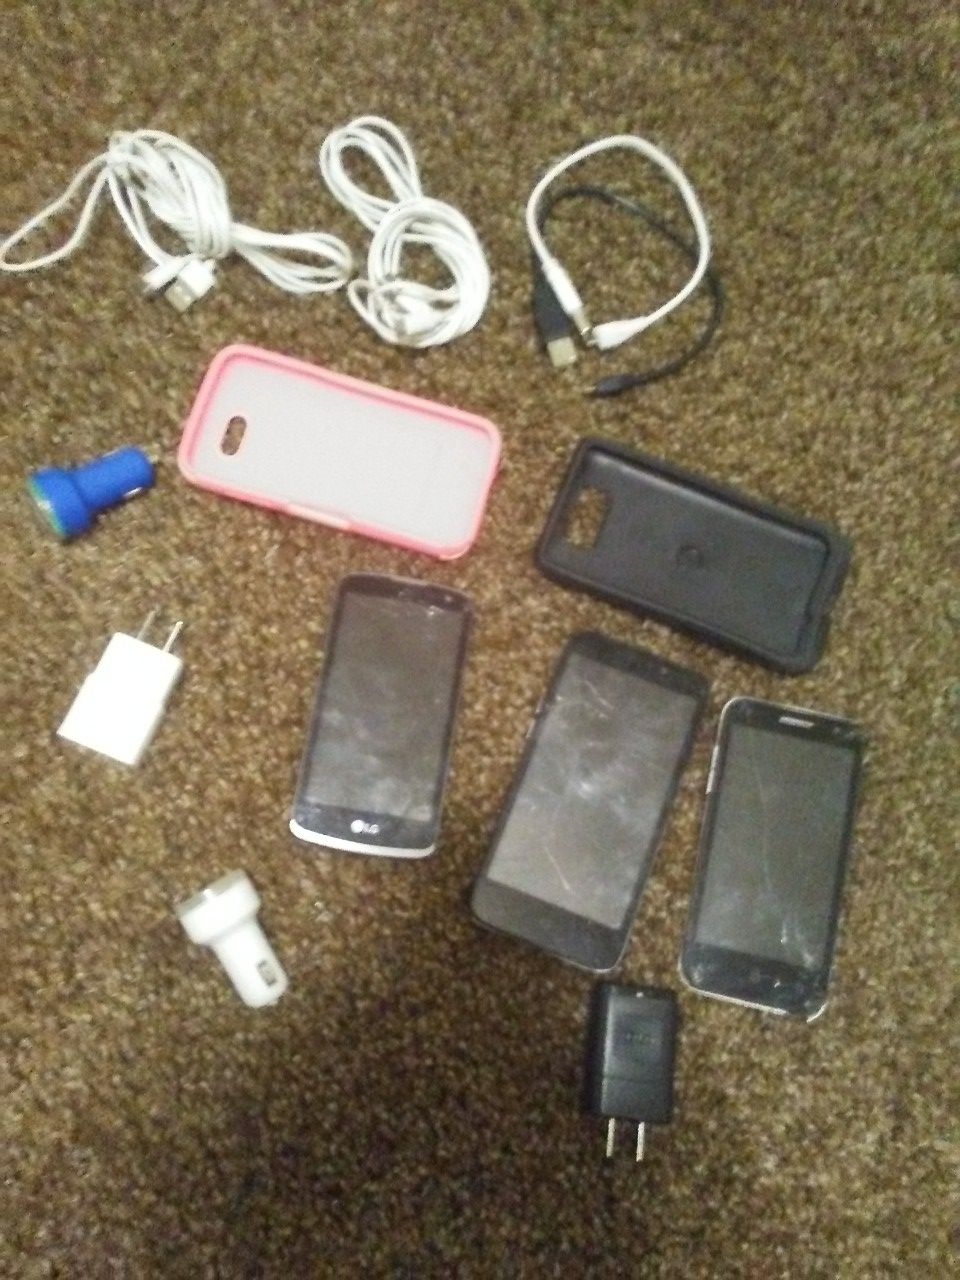 Good broken cell phones